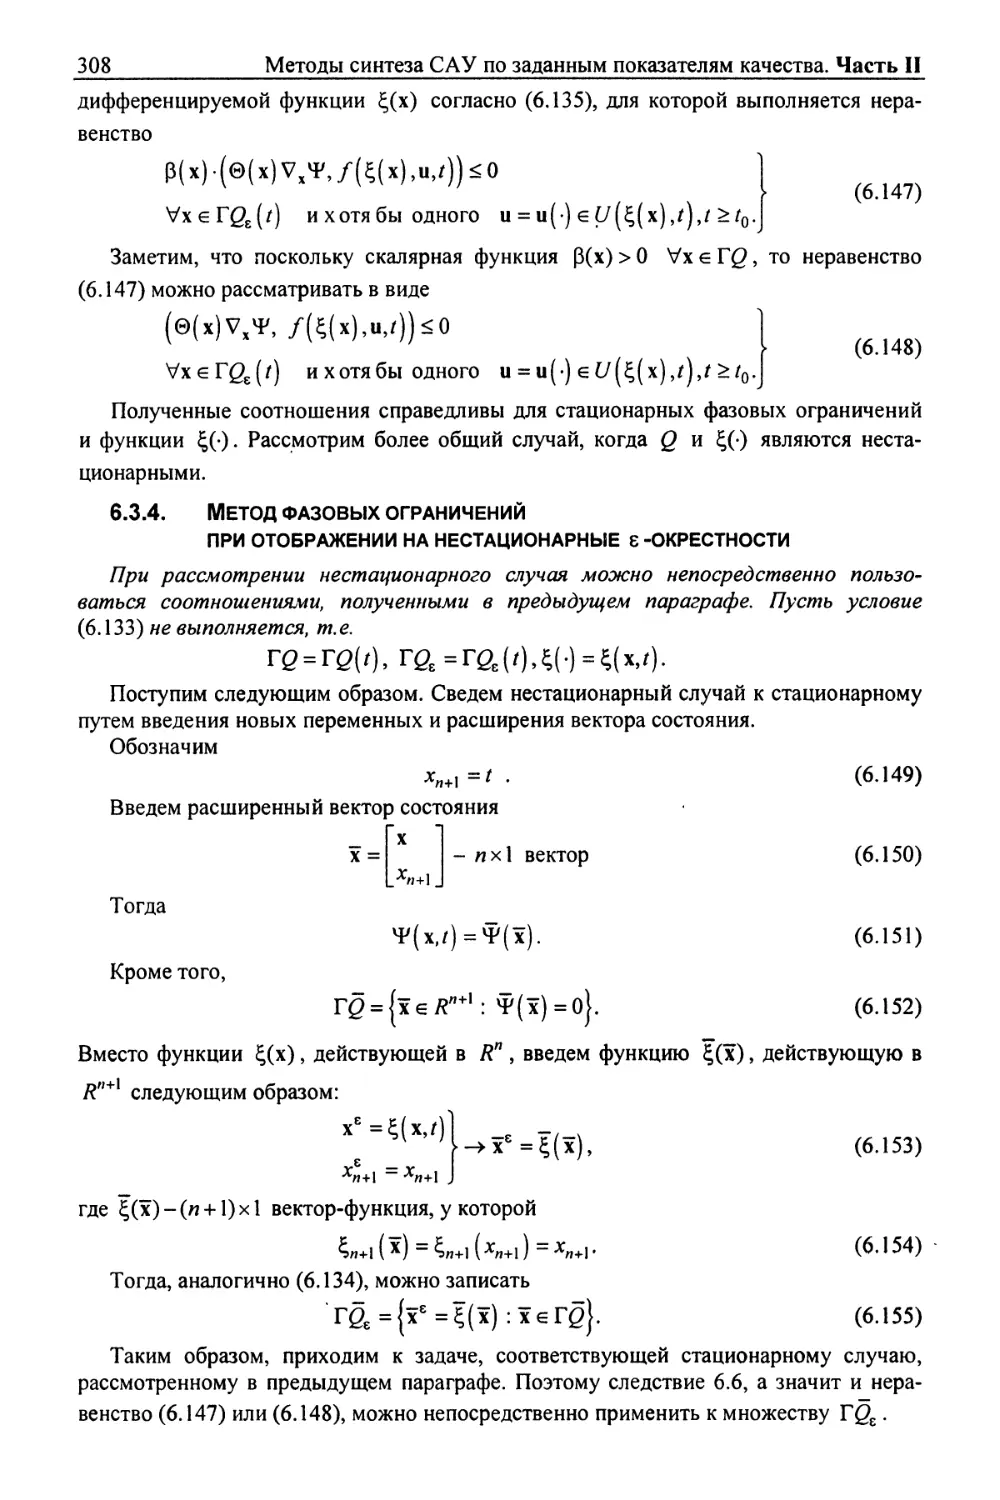 6.3.4. Метод фазовых ограничений при отображении на нестационарные ε-окрестности